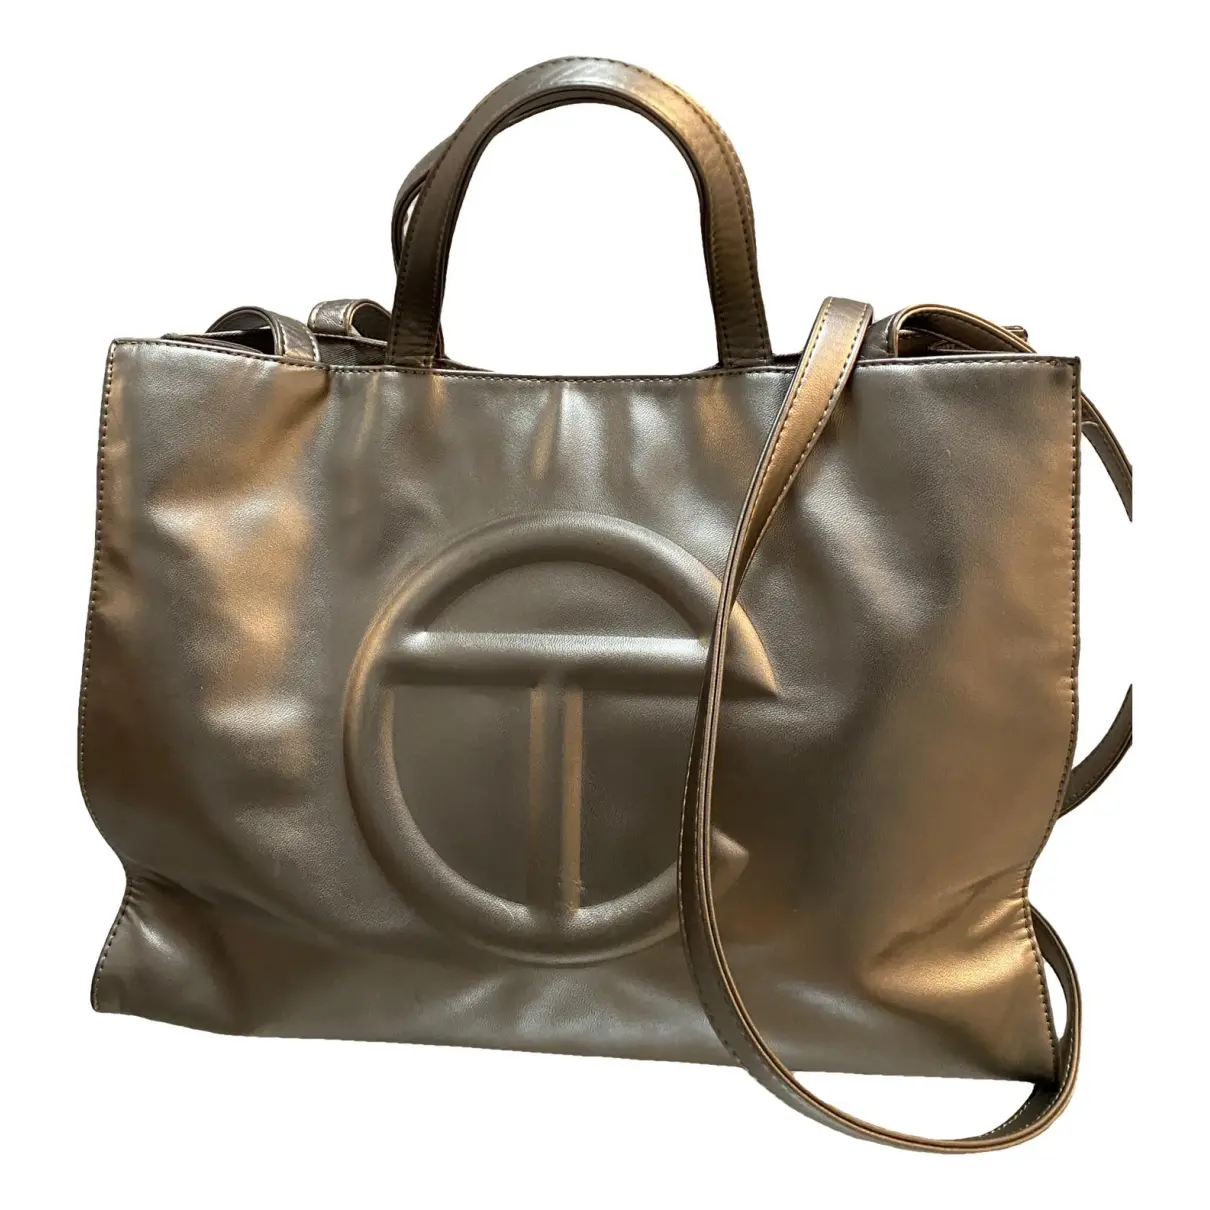 Medium Shopping Bag vegan leather handbag